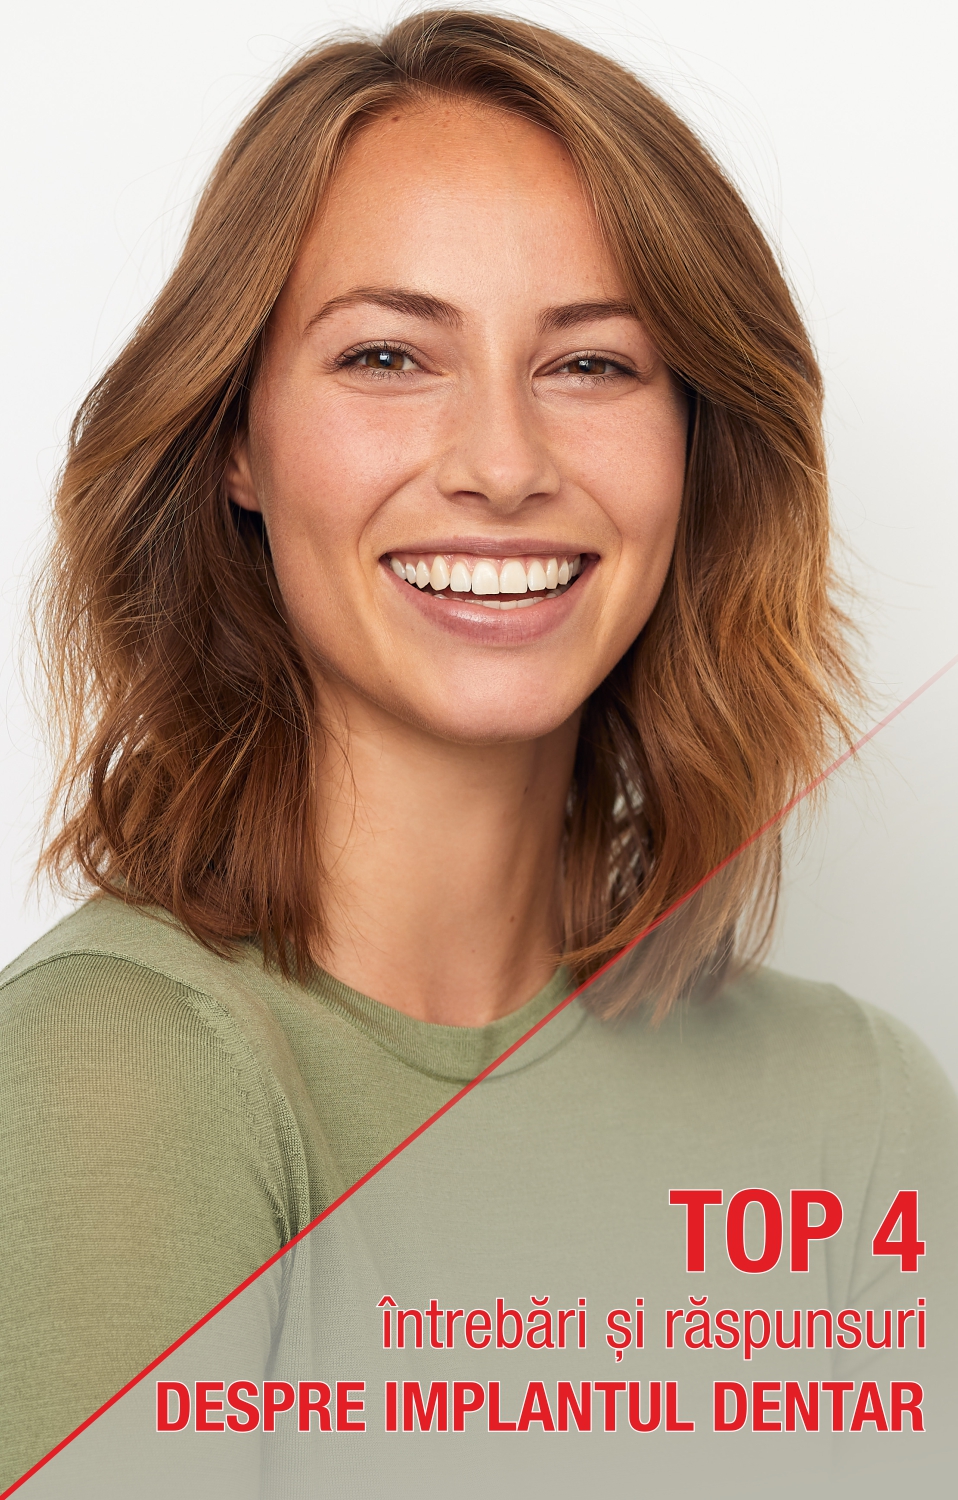 Top 4 întrebări și răspunsuri despre implant dentar